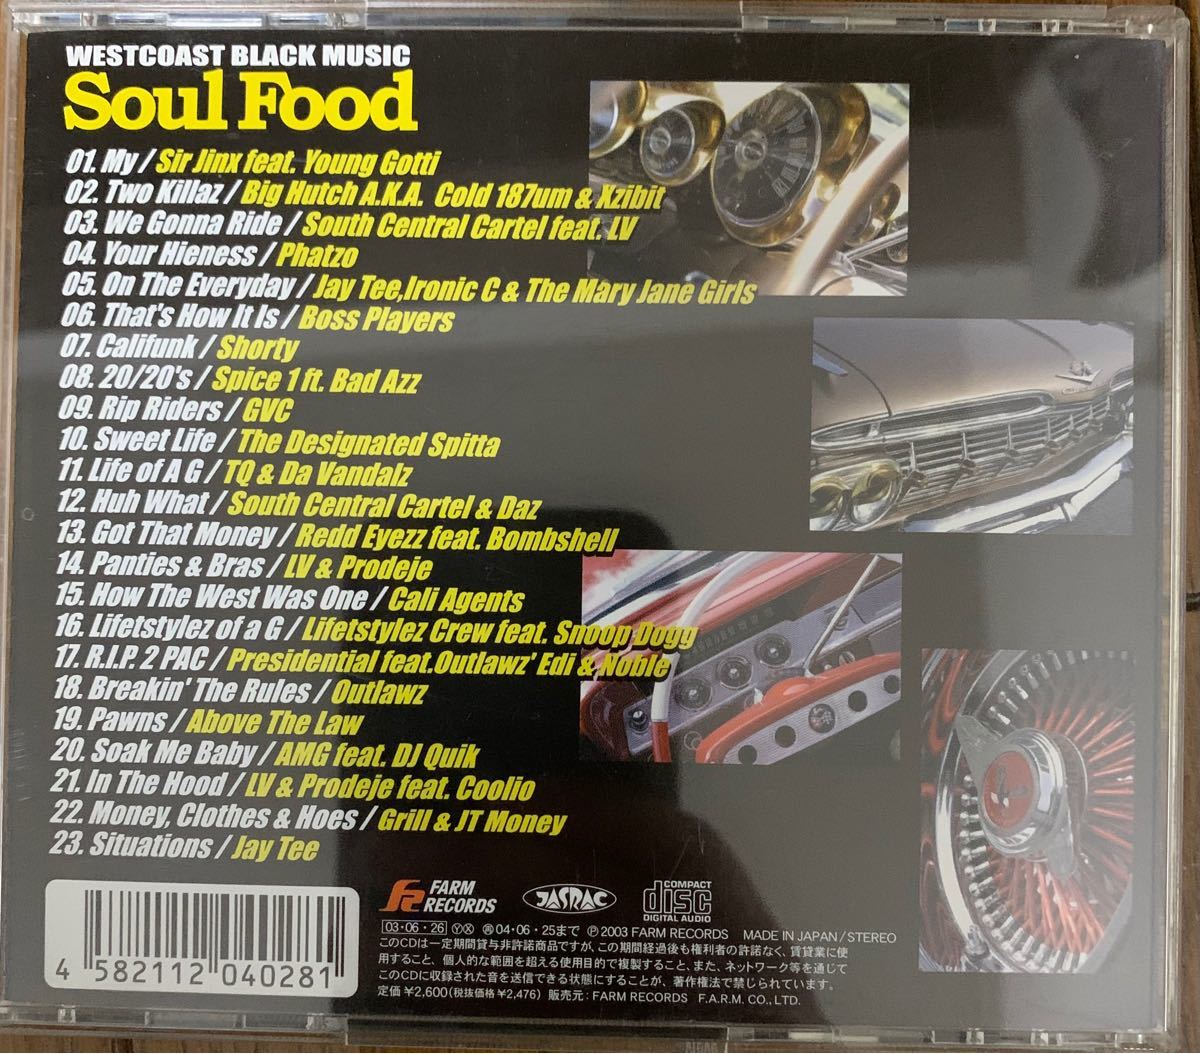 Soul Food WEST COAST TQ dj quik south central cartel